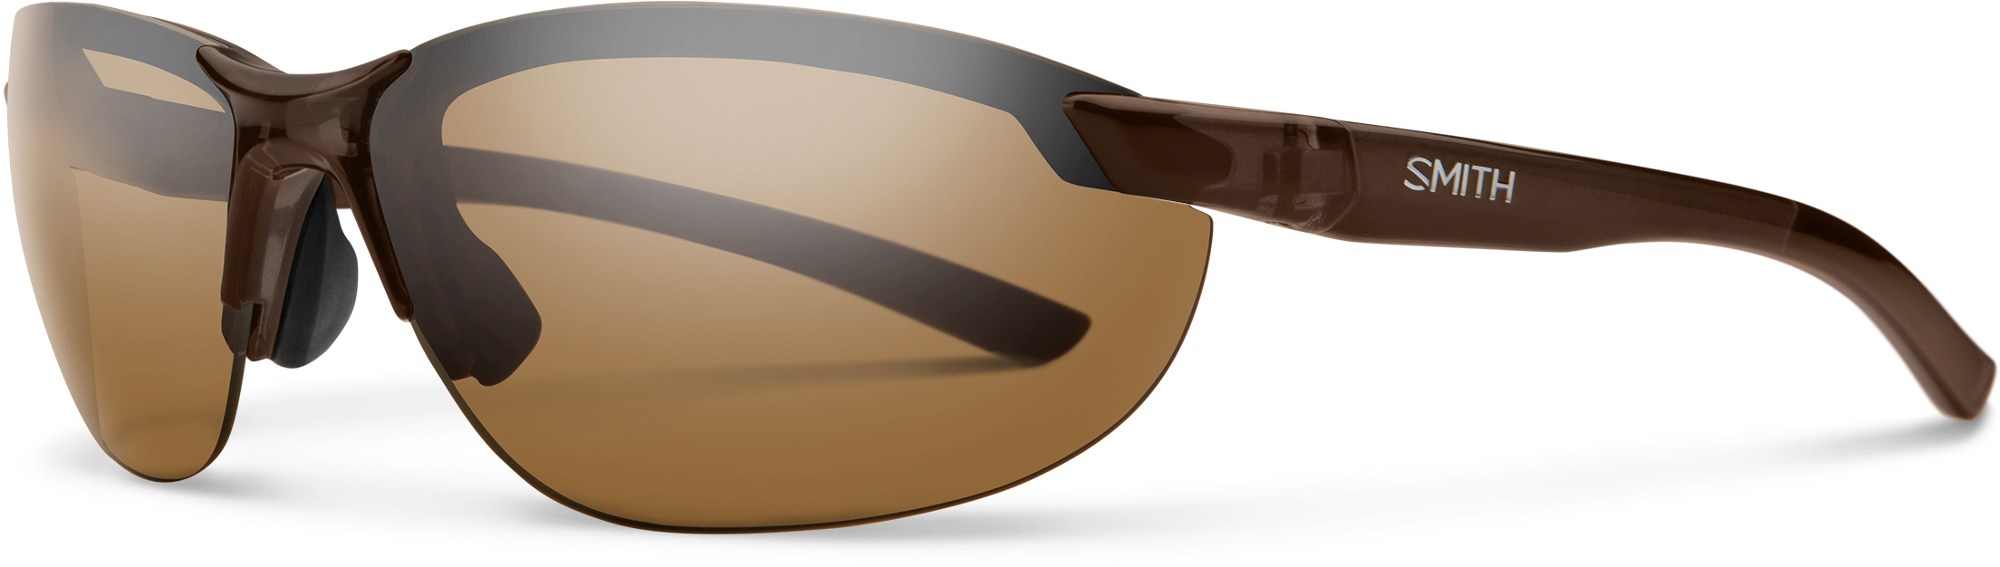 Поляризованные солнцезащитные очки Parallel 2 Smith, коричневый шкатулка уилл смит will smith 2